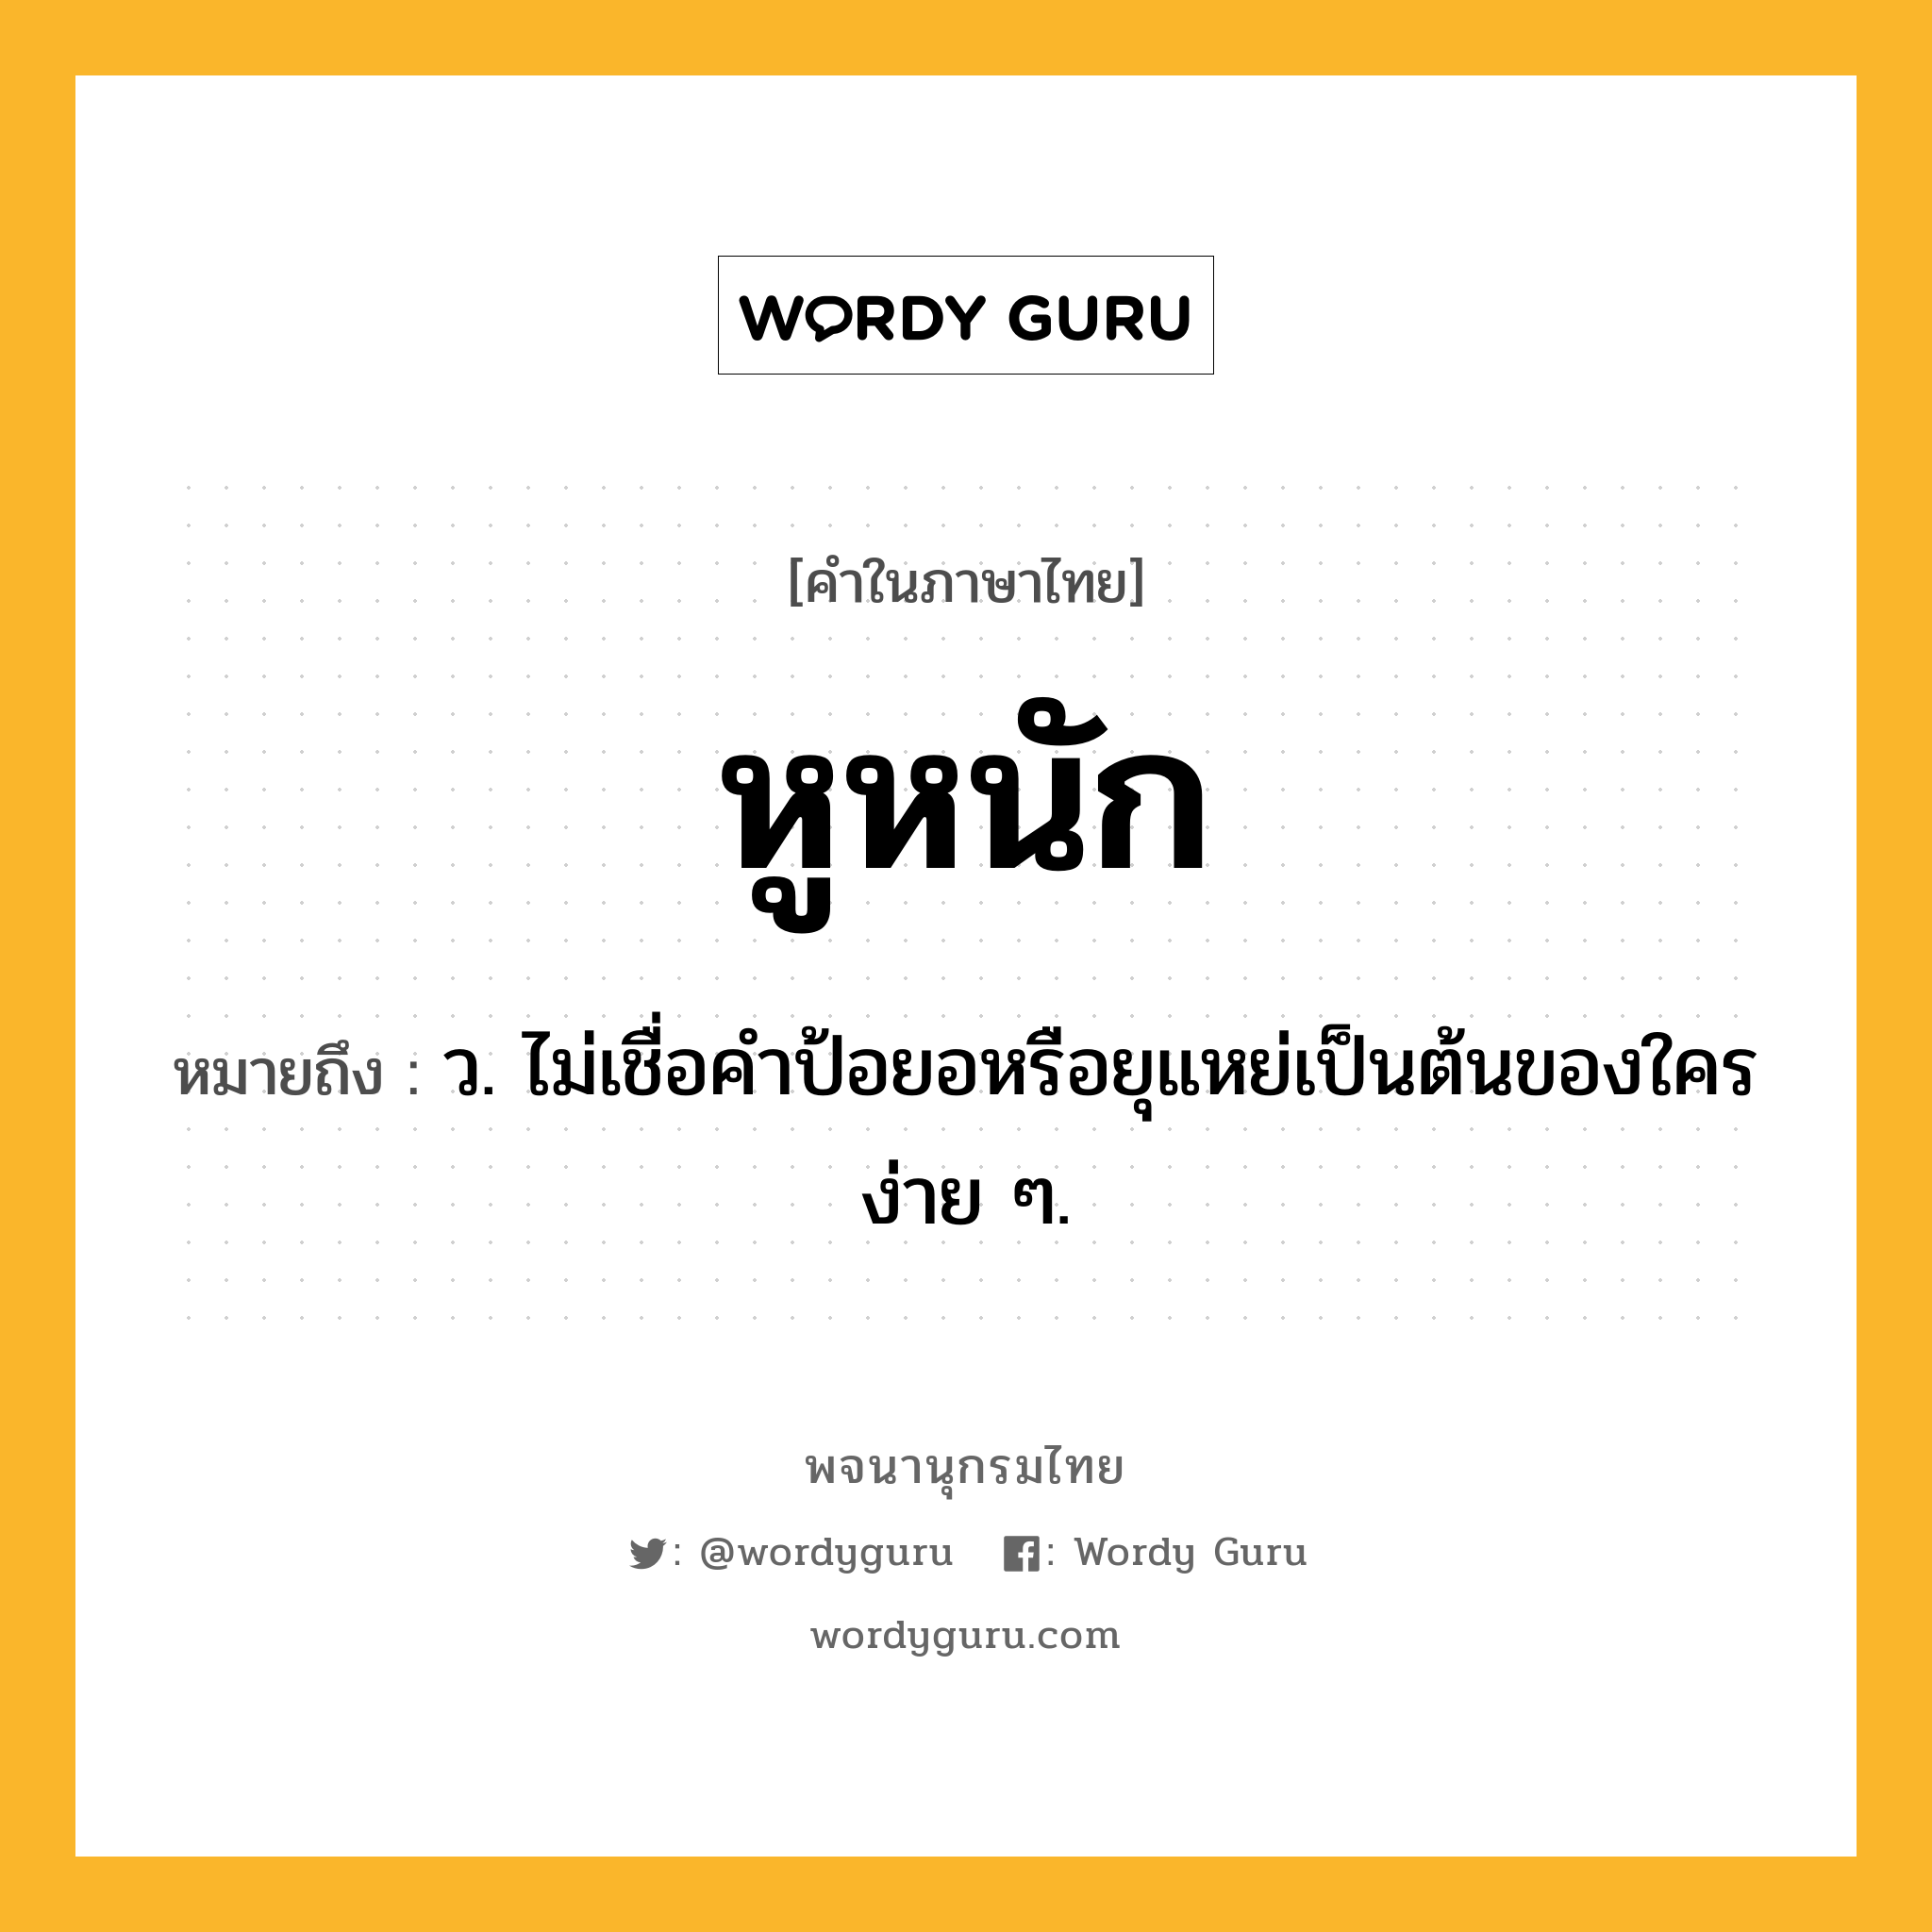 หูหนัก หมายถึงอะไร?, คำในภาษาไทย หูหนัก หมายถึง ว. ไม่เชื่อคำป้อยอหรือยุแหย่เป็นต้นของใครง่าย ๆ.